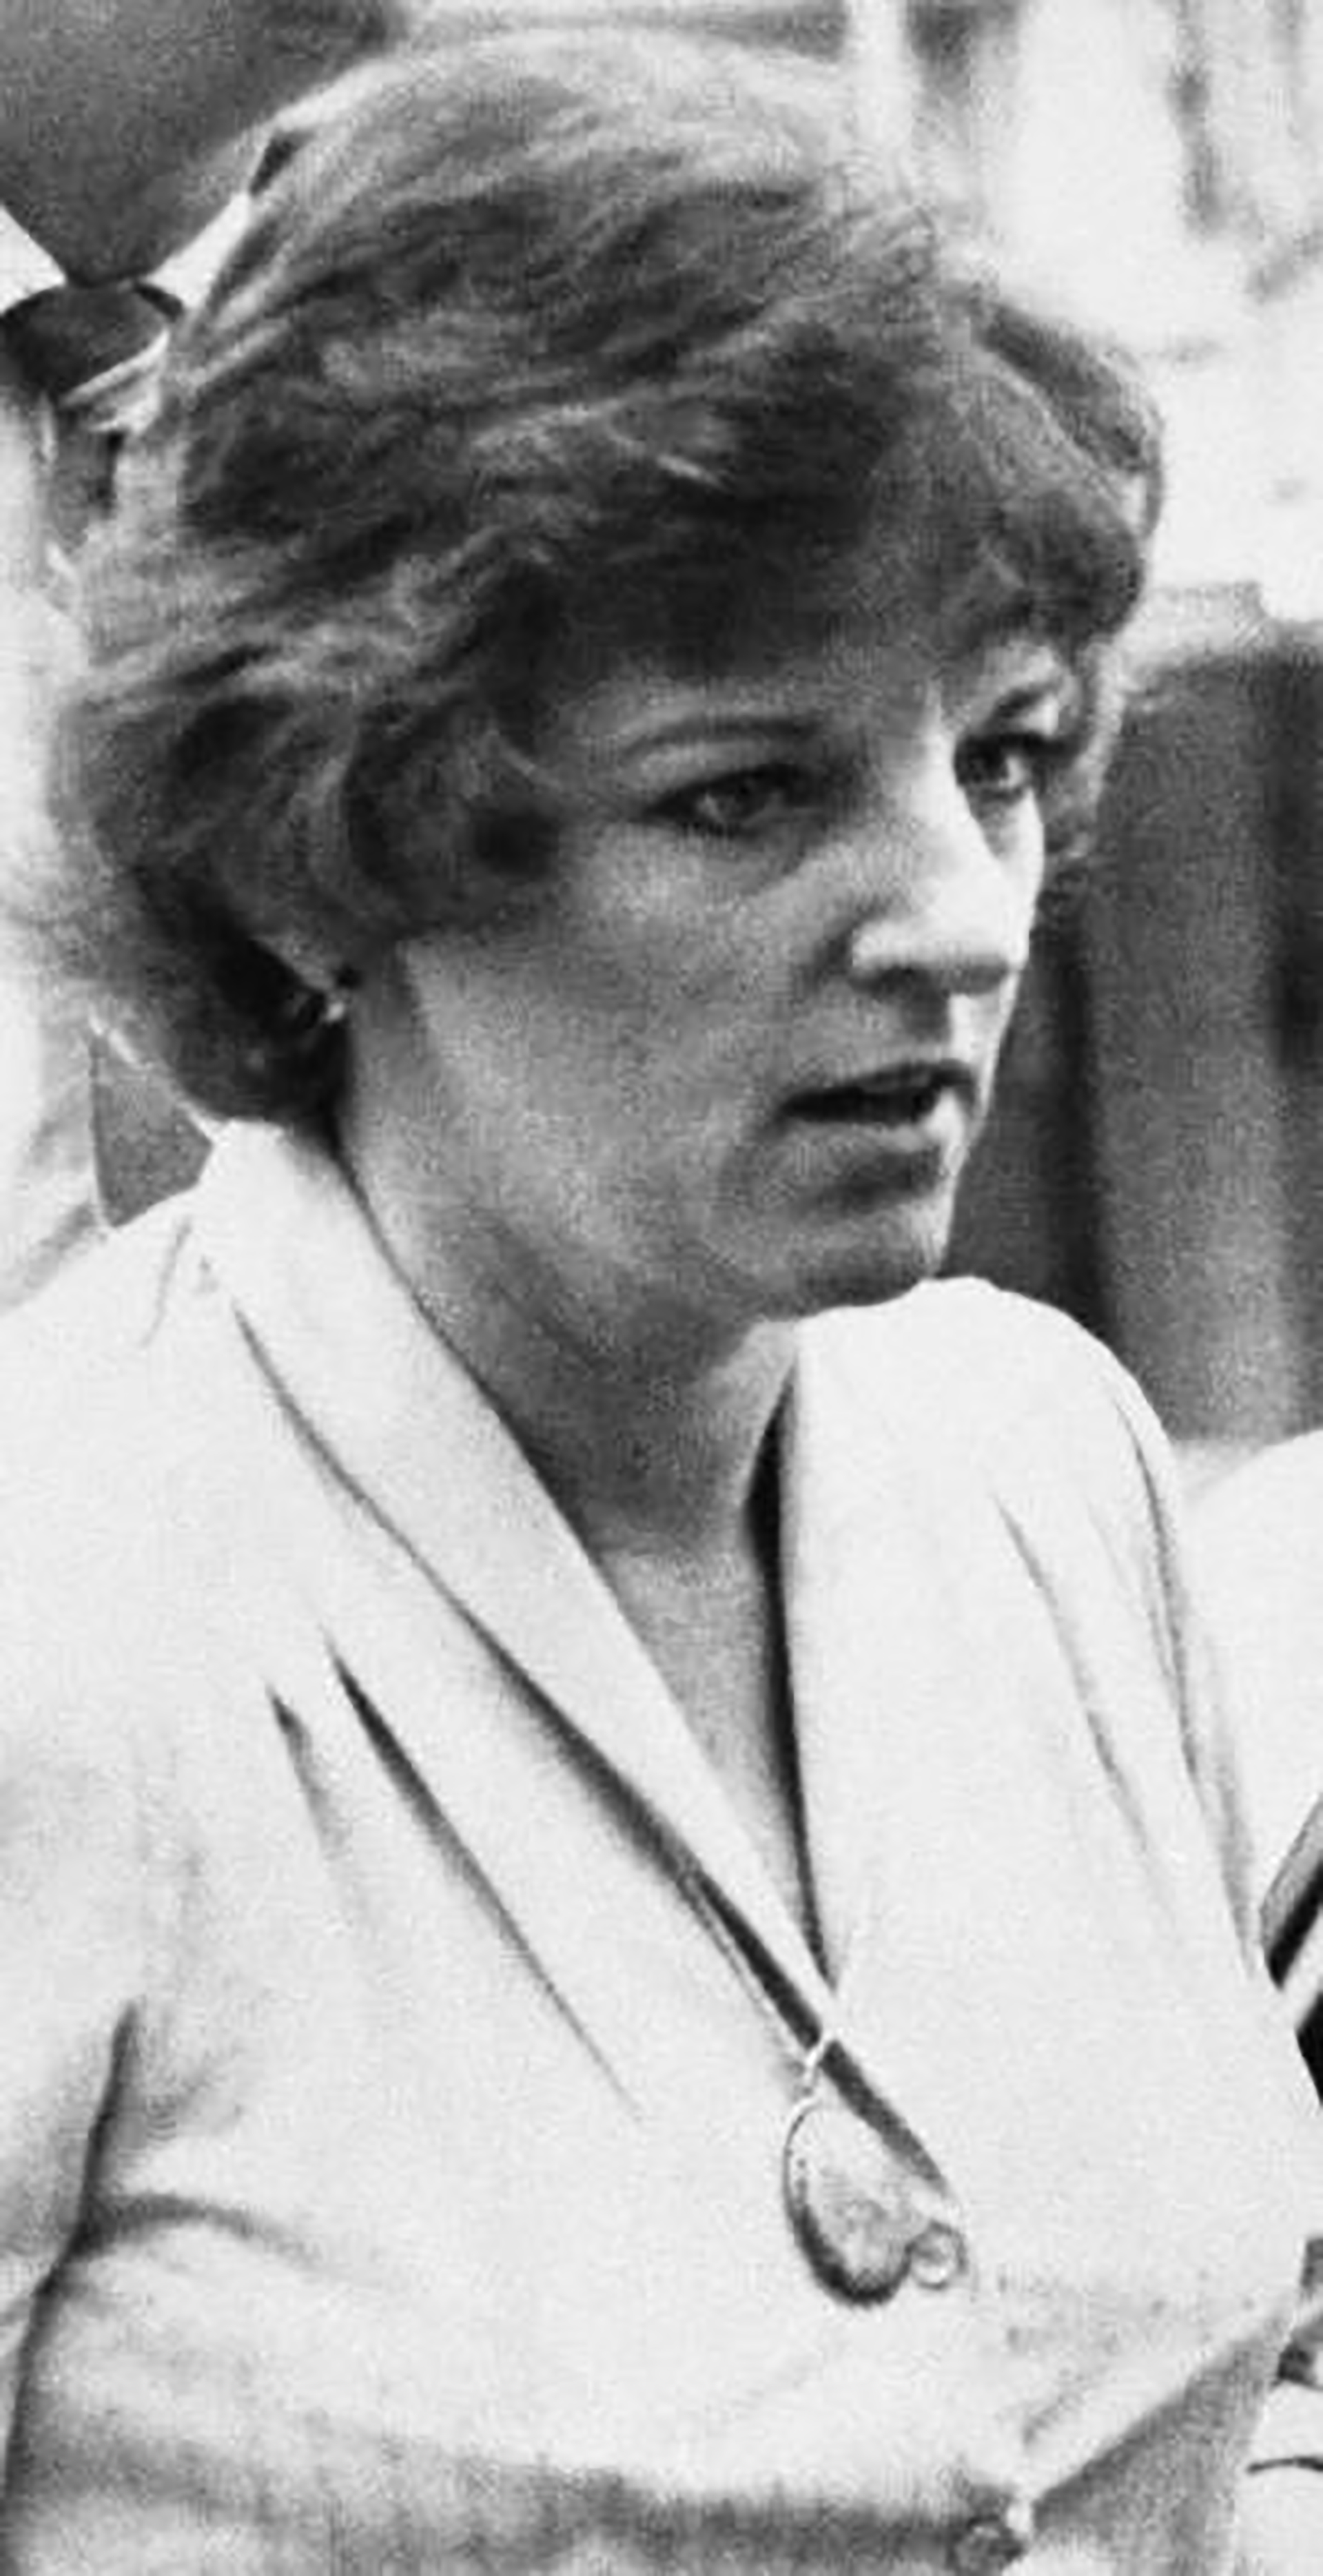 Gene Jones era considerada una enfermera modelo hasta que se descubrió que en un lapso de cinco años asesinó sesenta niños (AP Images)